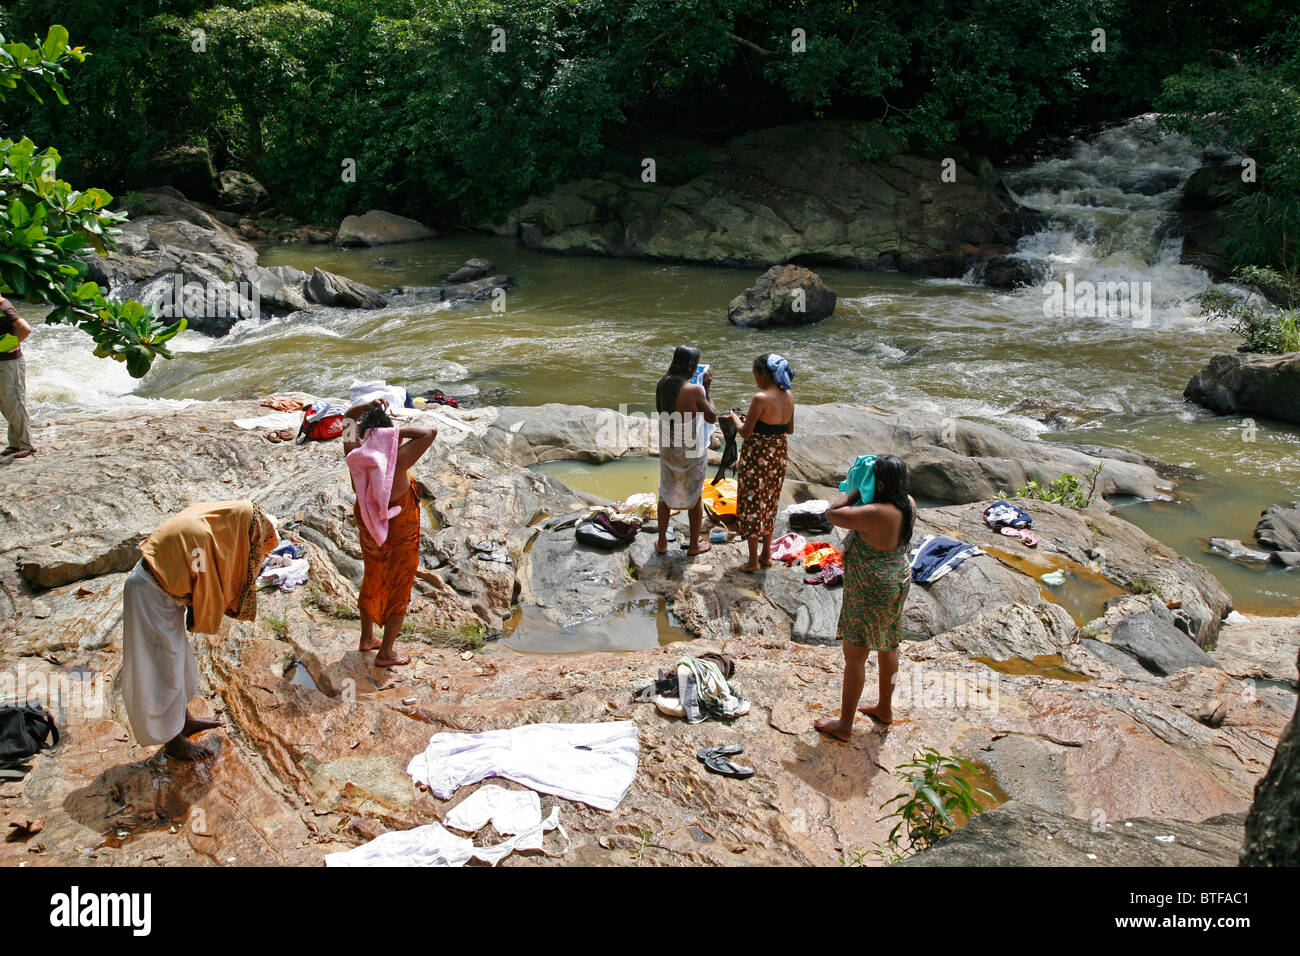 Village people washing and taking a bath in the river near Nuwara Eliya, Sri Lanka. Stock Photo